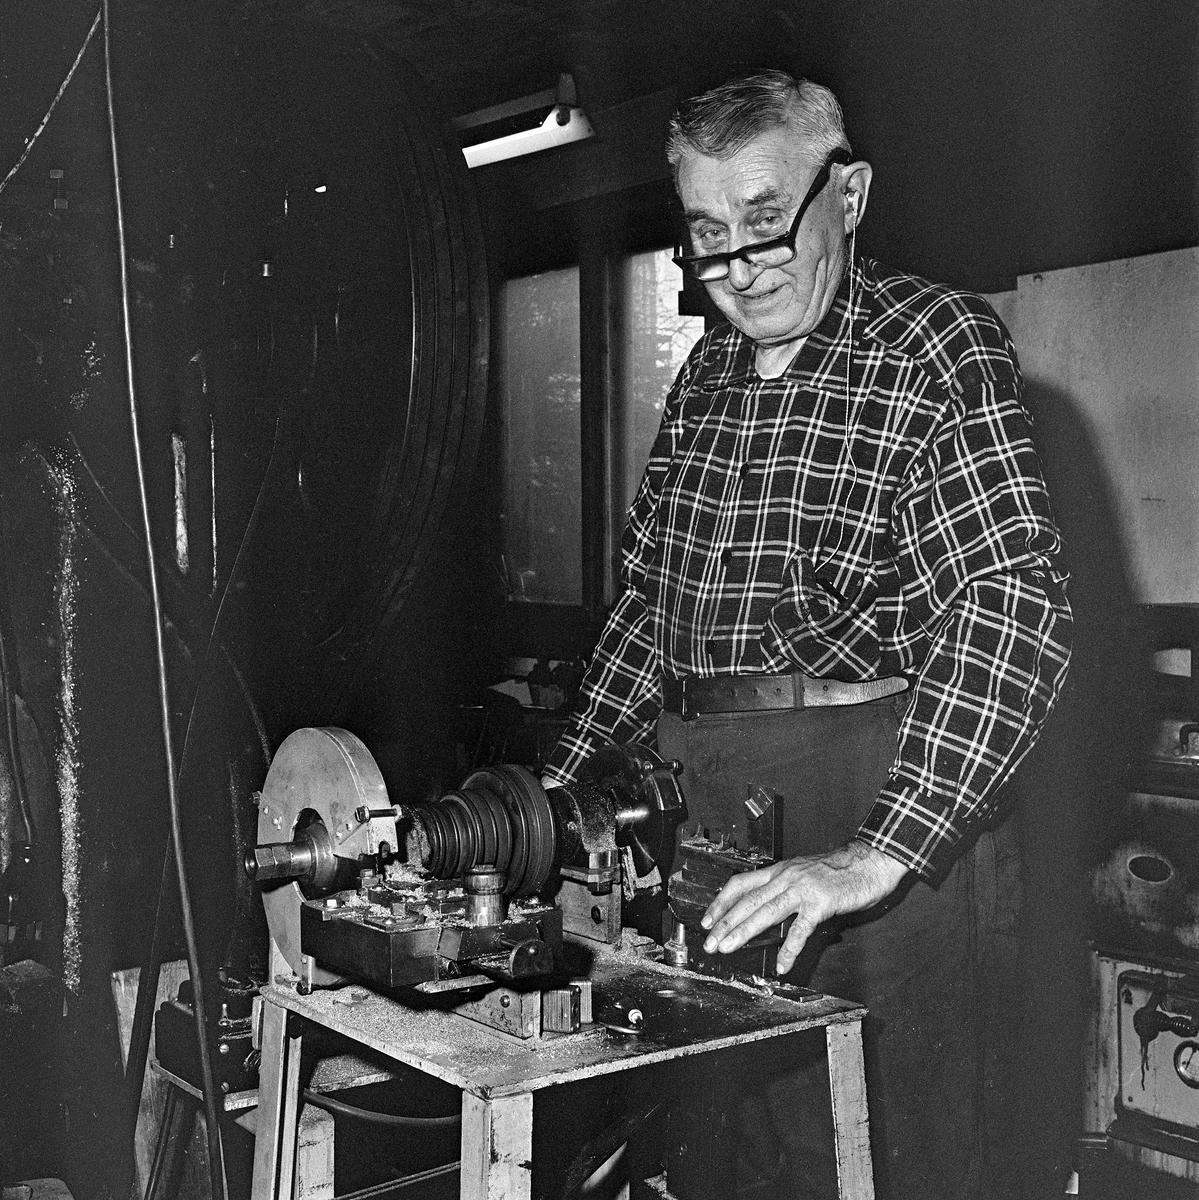 Verktøymaker og slukfabrikant Jens Hansen fra Gjøvik, fotografert i verkstedet i 1970.  Hansen var særlig kjent for Devon-slukene sine, metallagn som var formet som små fiskeetterlikninger med «propellvinger» som fikk dem til å rotere hurtig i vannet med kroker på kroppen og i haleenden.  Hansen konstruerte sjøl maskiner for produksjon av denne sluktypen i 1930-åra.  Ideen skal han ha «lånt» fra en maskin som kvesset rivetinner på Christiania Spikerverk.  I 2006 publiserte Erland Fjell følgende beskrivelse av produksjonsprosessen i tidsskriftet «Alt om Fiske»: «Lange messingrør kappes, før de glødes på 600 grader i en time.  Etter litt avkjøling og en omgang tromling i finhakket flis av furu for å fjerne glødeskall, legges rørbitene mellom to former og føres manuelt inn i en lukket maskin som roterer innvendig og hamrer til den ytre formen.  På de største slukene må det til enda et par omganger med gløding før denne delen av prosessen er ferdig.  Deretter skal det skjæres spor til kroksettet, og det skal stukes riller til ørene, som loddes fast med en tråd av 40 % sølv – til tre tusen blanke kroner for en halv kilo.  Etter dette sendes slukene til påføring av kobber-, gull- eller sølvbelegg.  Så kommer stafferingen, altså pålegging av farger og mønstre, før den siste varmeherding på 250 grader.  Da gjenstår bare montering av kroksett.»  Jens Hansens maskiner er seinere overdratt til Sole arbeidstreningssenter på Skreia på Toten, som da Erland Fjell skrev sin artikkel videreførte produksjonen av noe de markedsførte som «TotenDEVON».  Etter den tid er virksomheten flyttet til Lena på Østre Toten, der virksomheten drives videre under navnet «Lena Produkter AS».